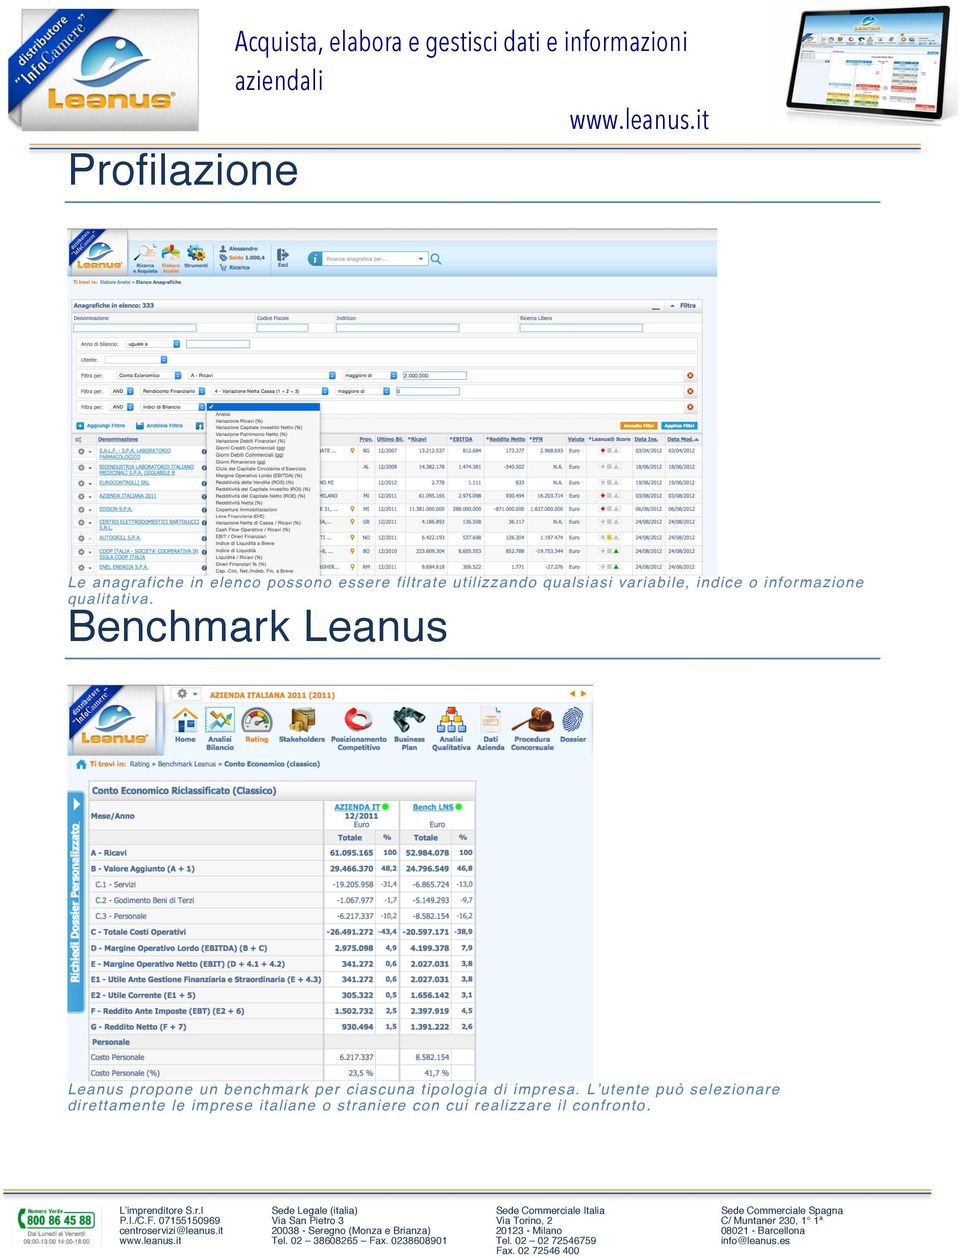 Benchmark Leanus Leanus propone un benchmark per ciascuna tipologia di impresa.